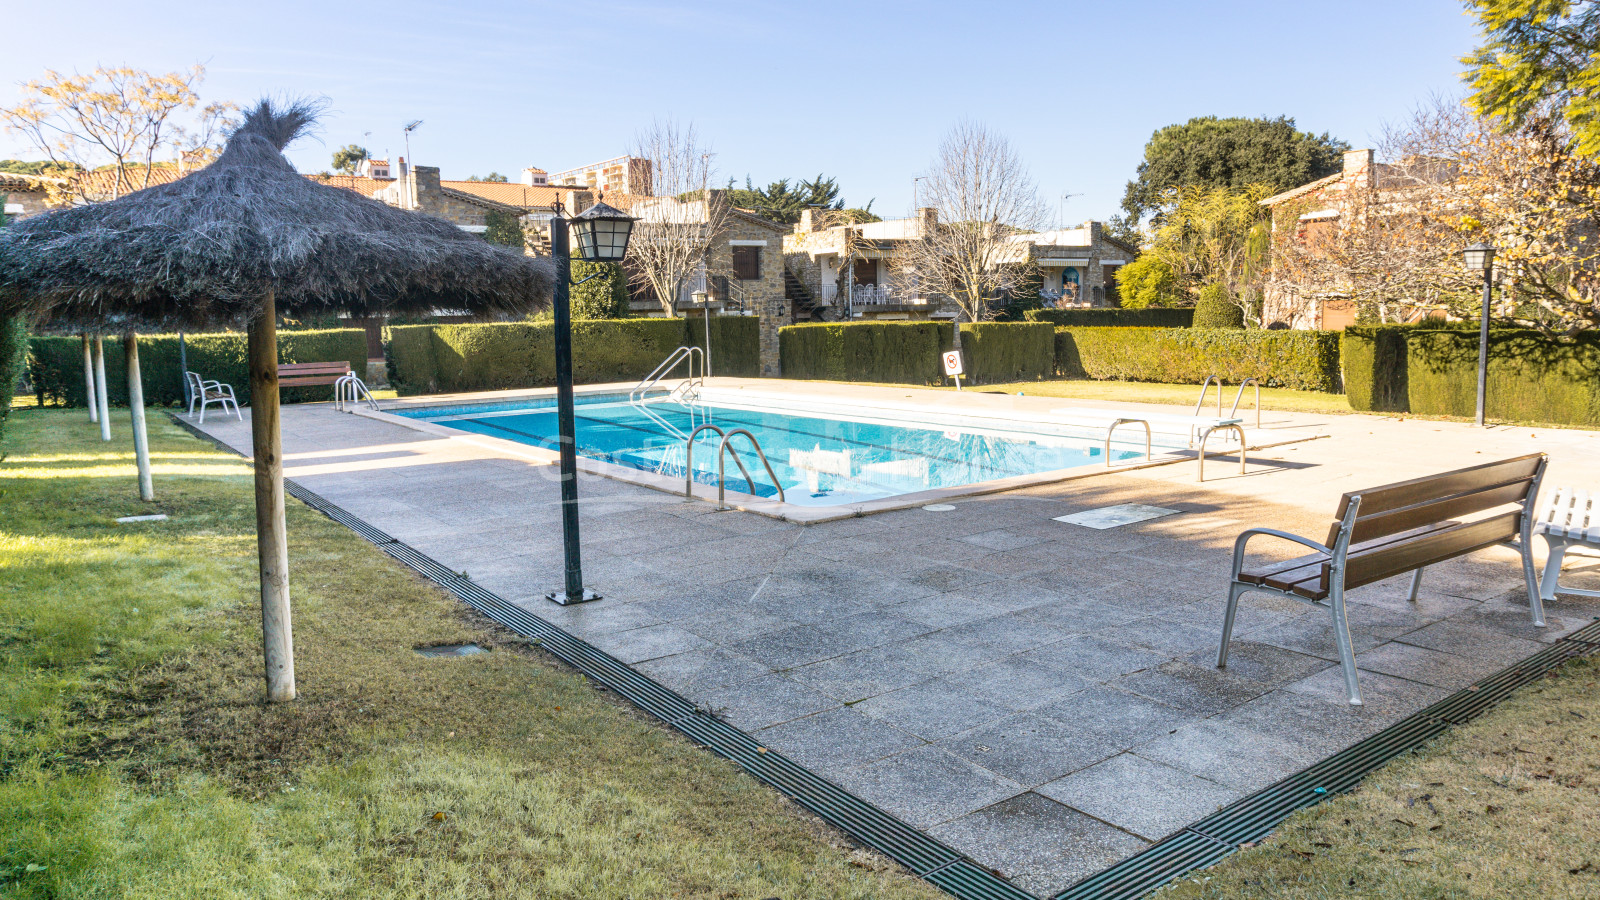 Bonita casa en venta en Calella Palafrugell a 10 min de la playa, en atractiva comunidad con piscina